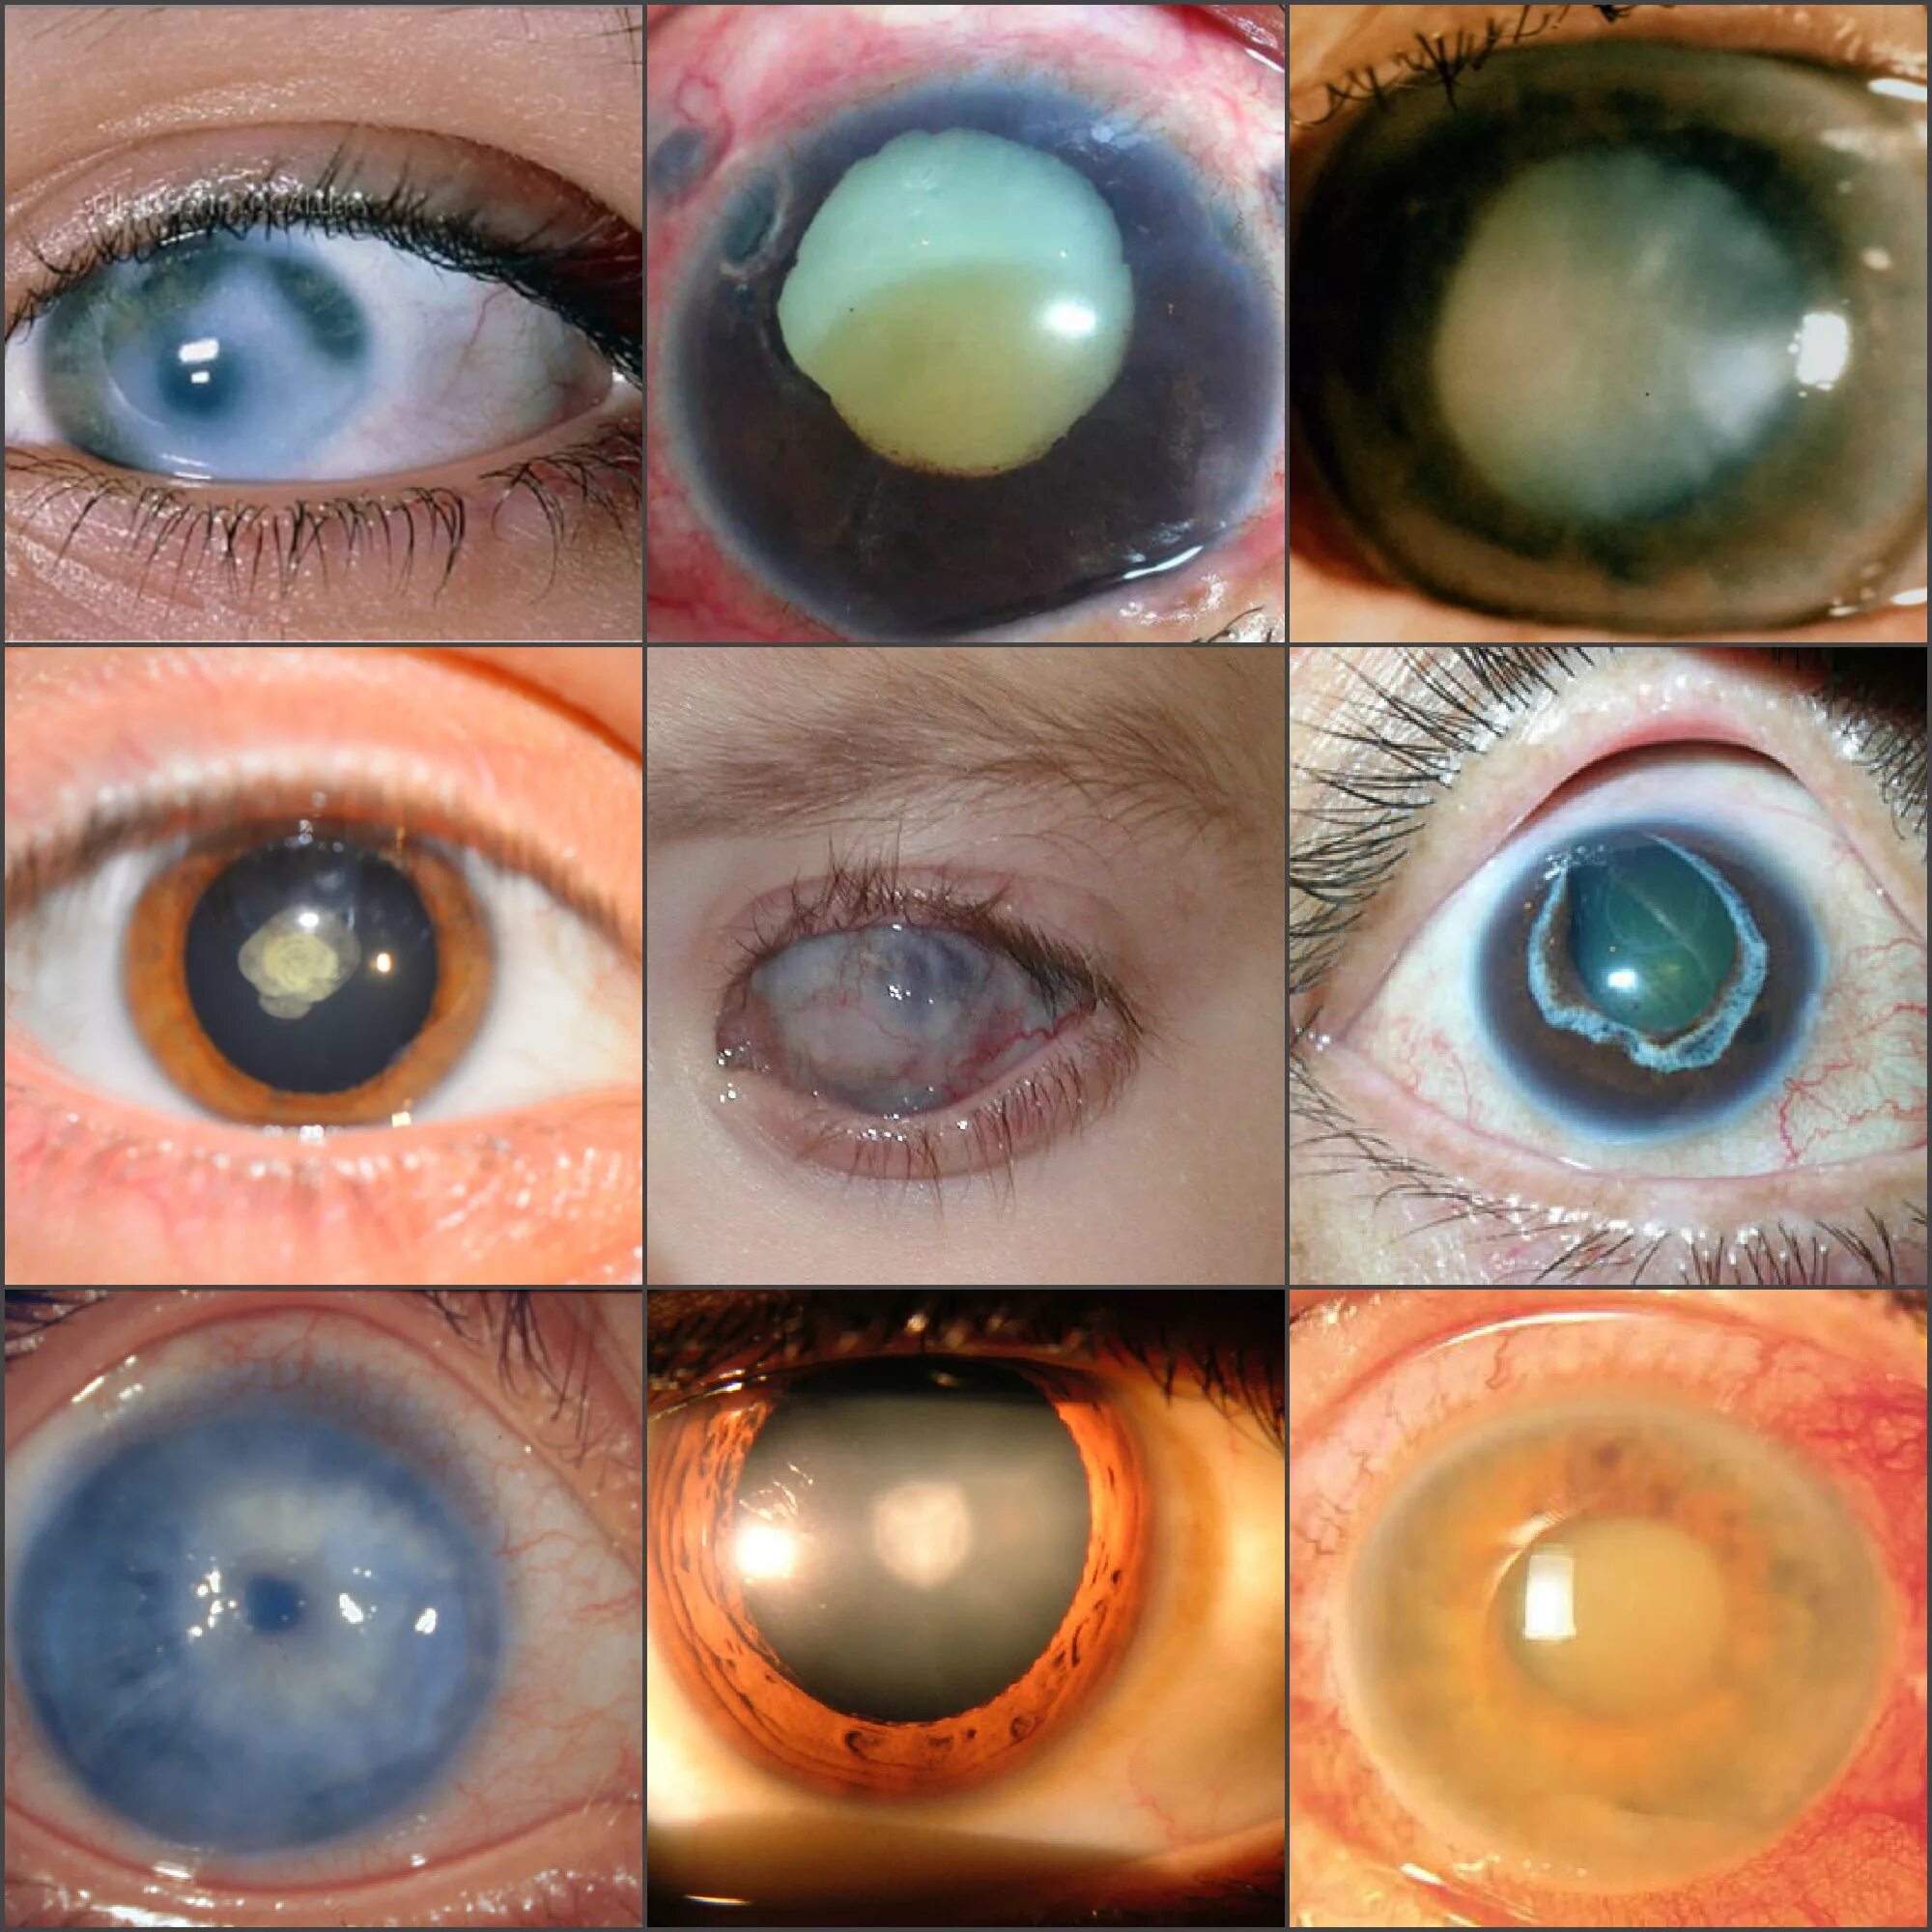 Факолитическая катаракта. Миопизирующая катаракта. Закрытоугольная глаукома глаза. Факоморфическая катаракта. Вторичная катаракта после операции